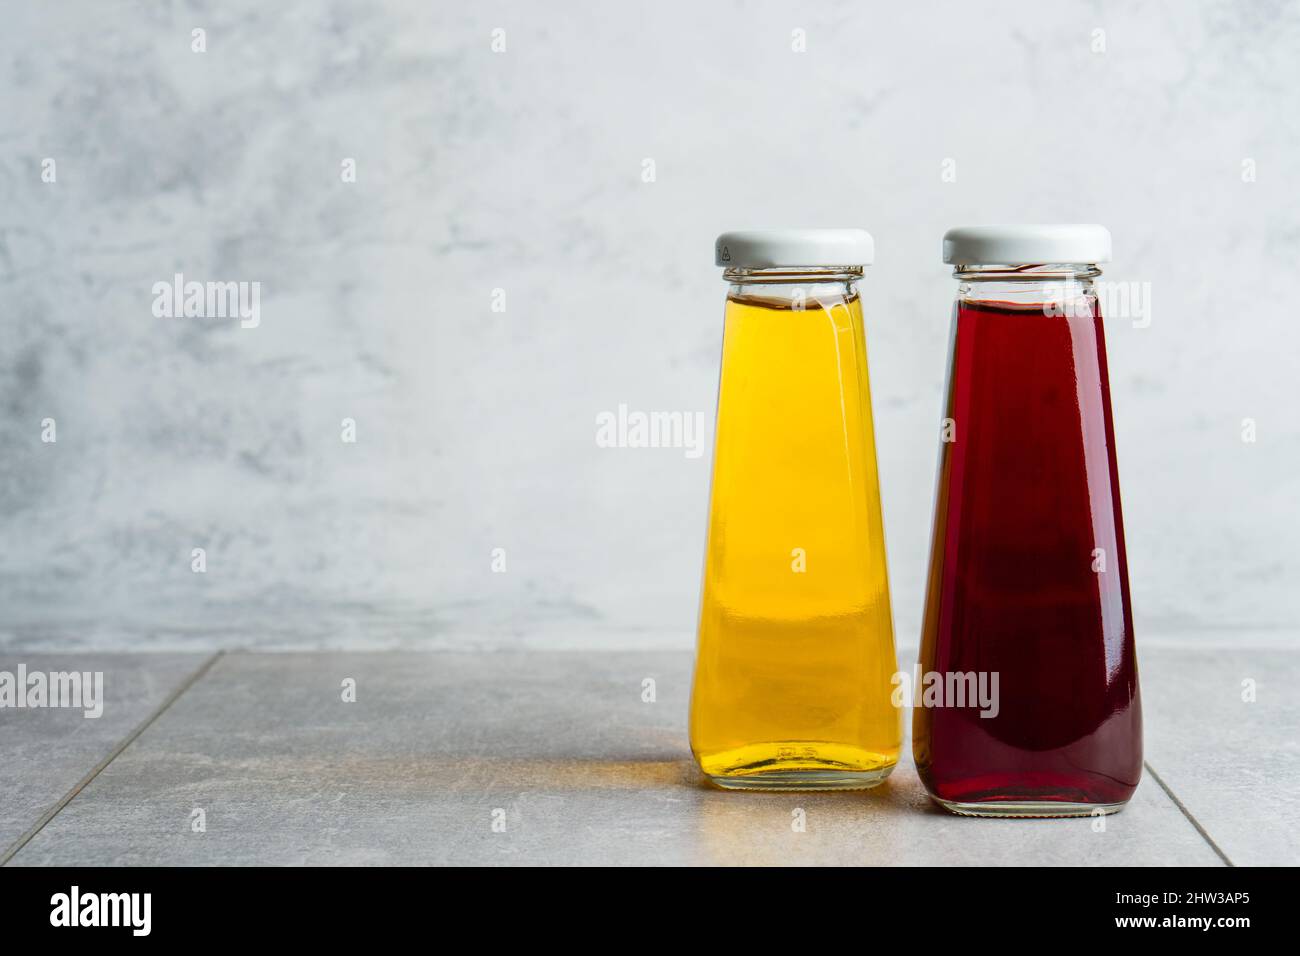 Bottiglie con bevanda a base di acqua halthy liquida gialla e rossa su sfondo grigio. Succo d'arancia e di ciliegia Foto Stock